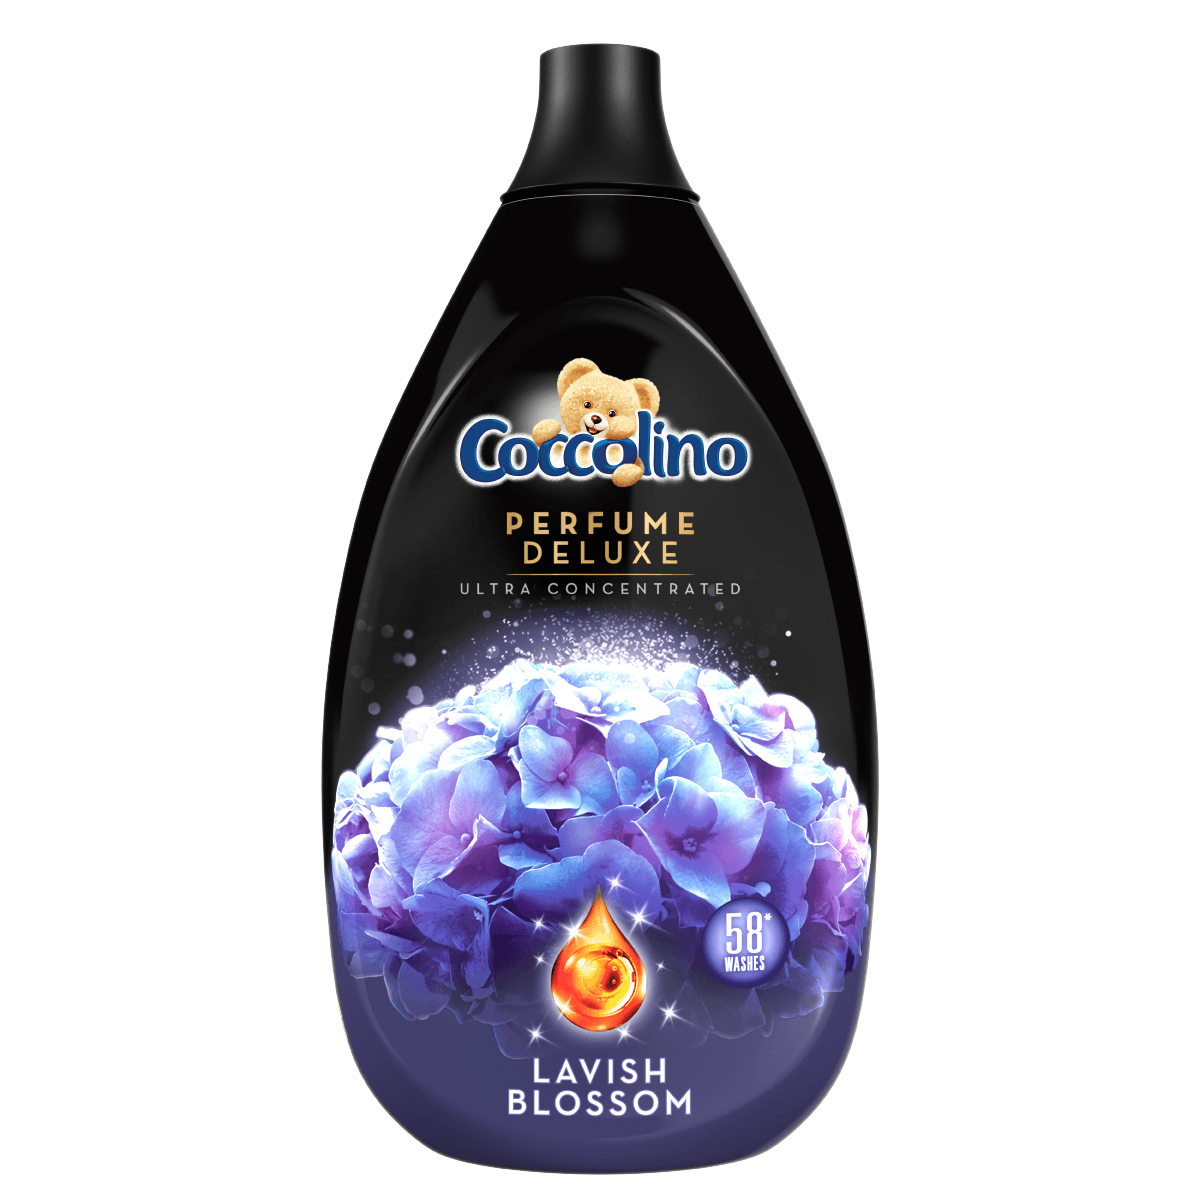 Coccolino Perfume Deluxe 870ml - Lavish Blossom concentrate